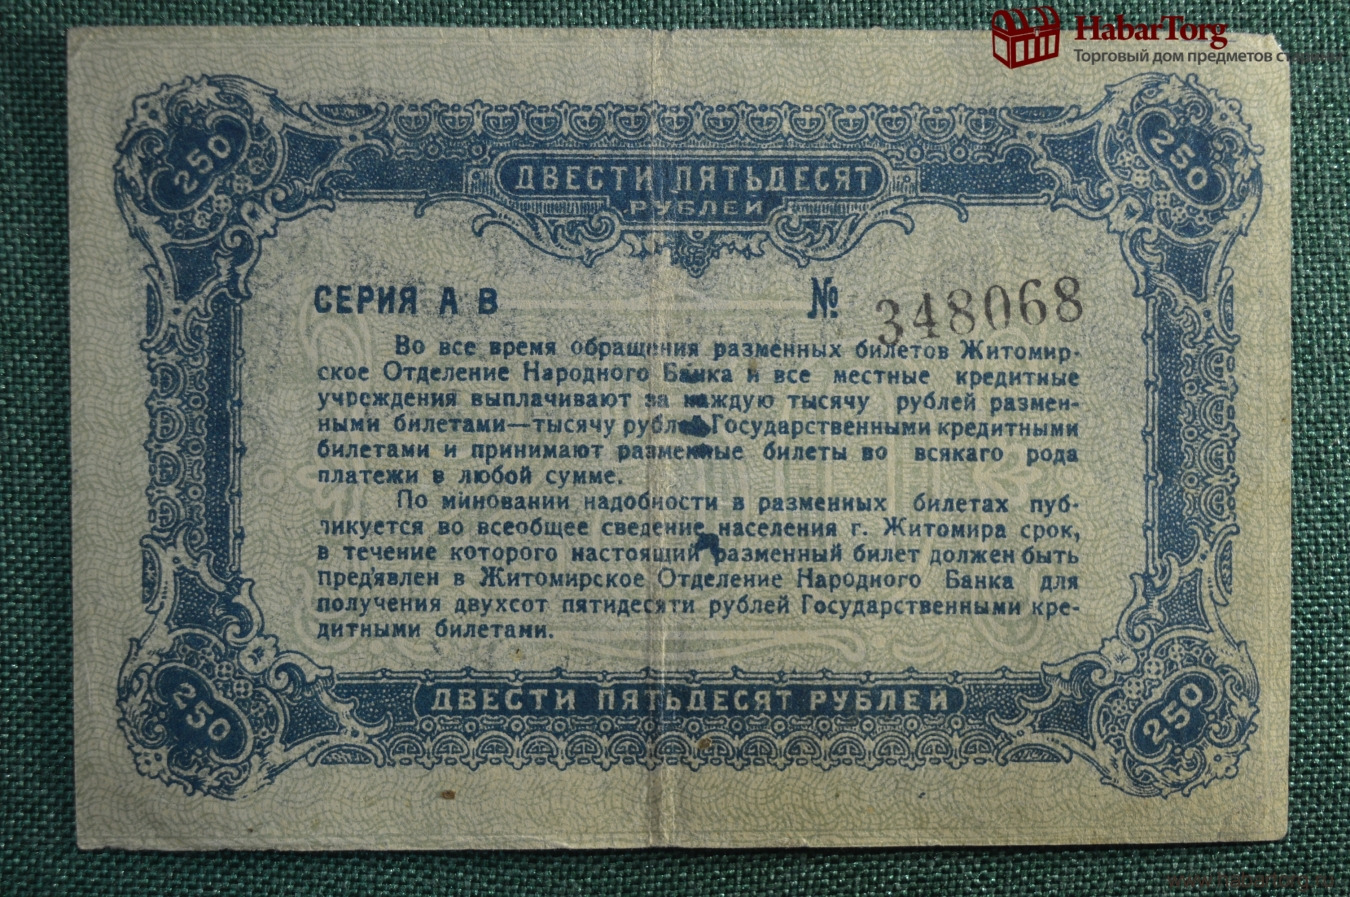 250 рублей билет